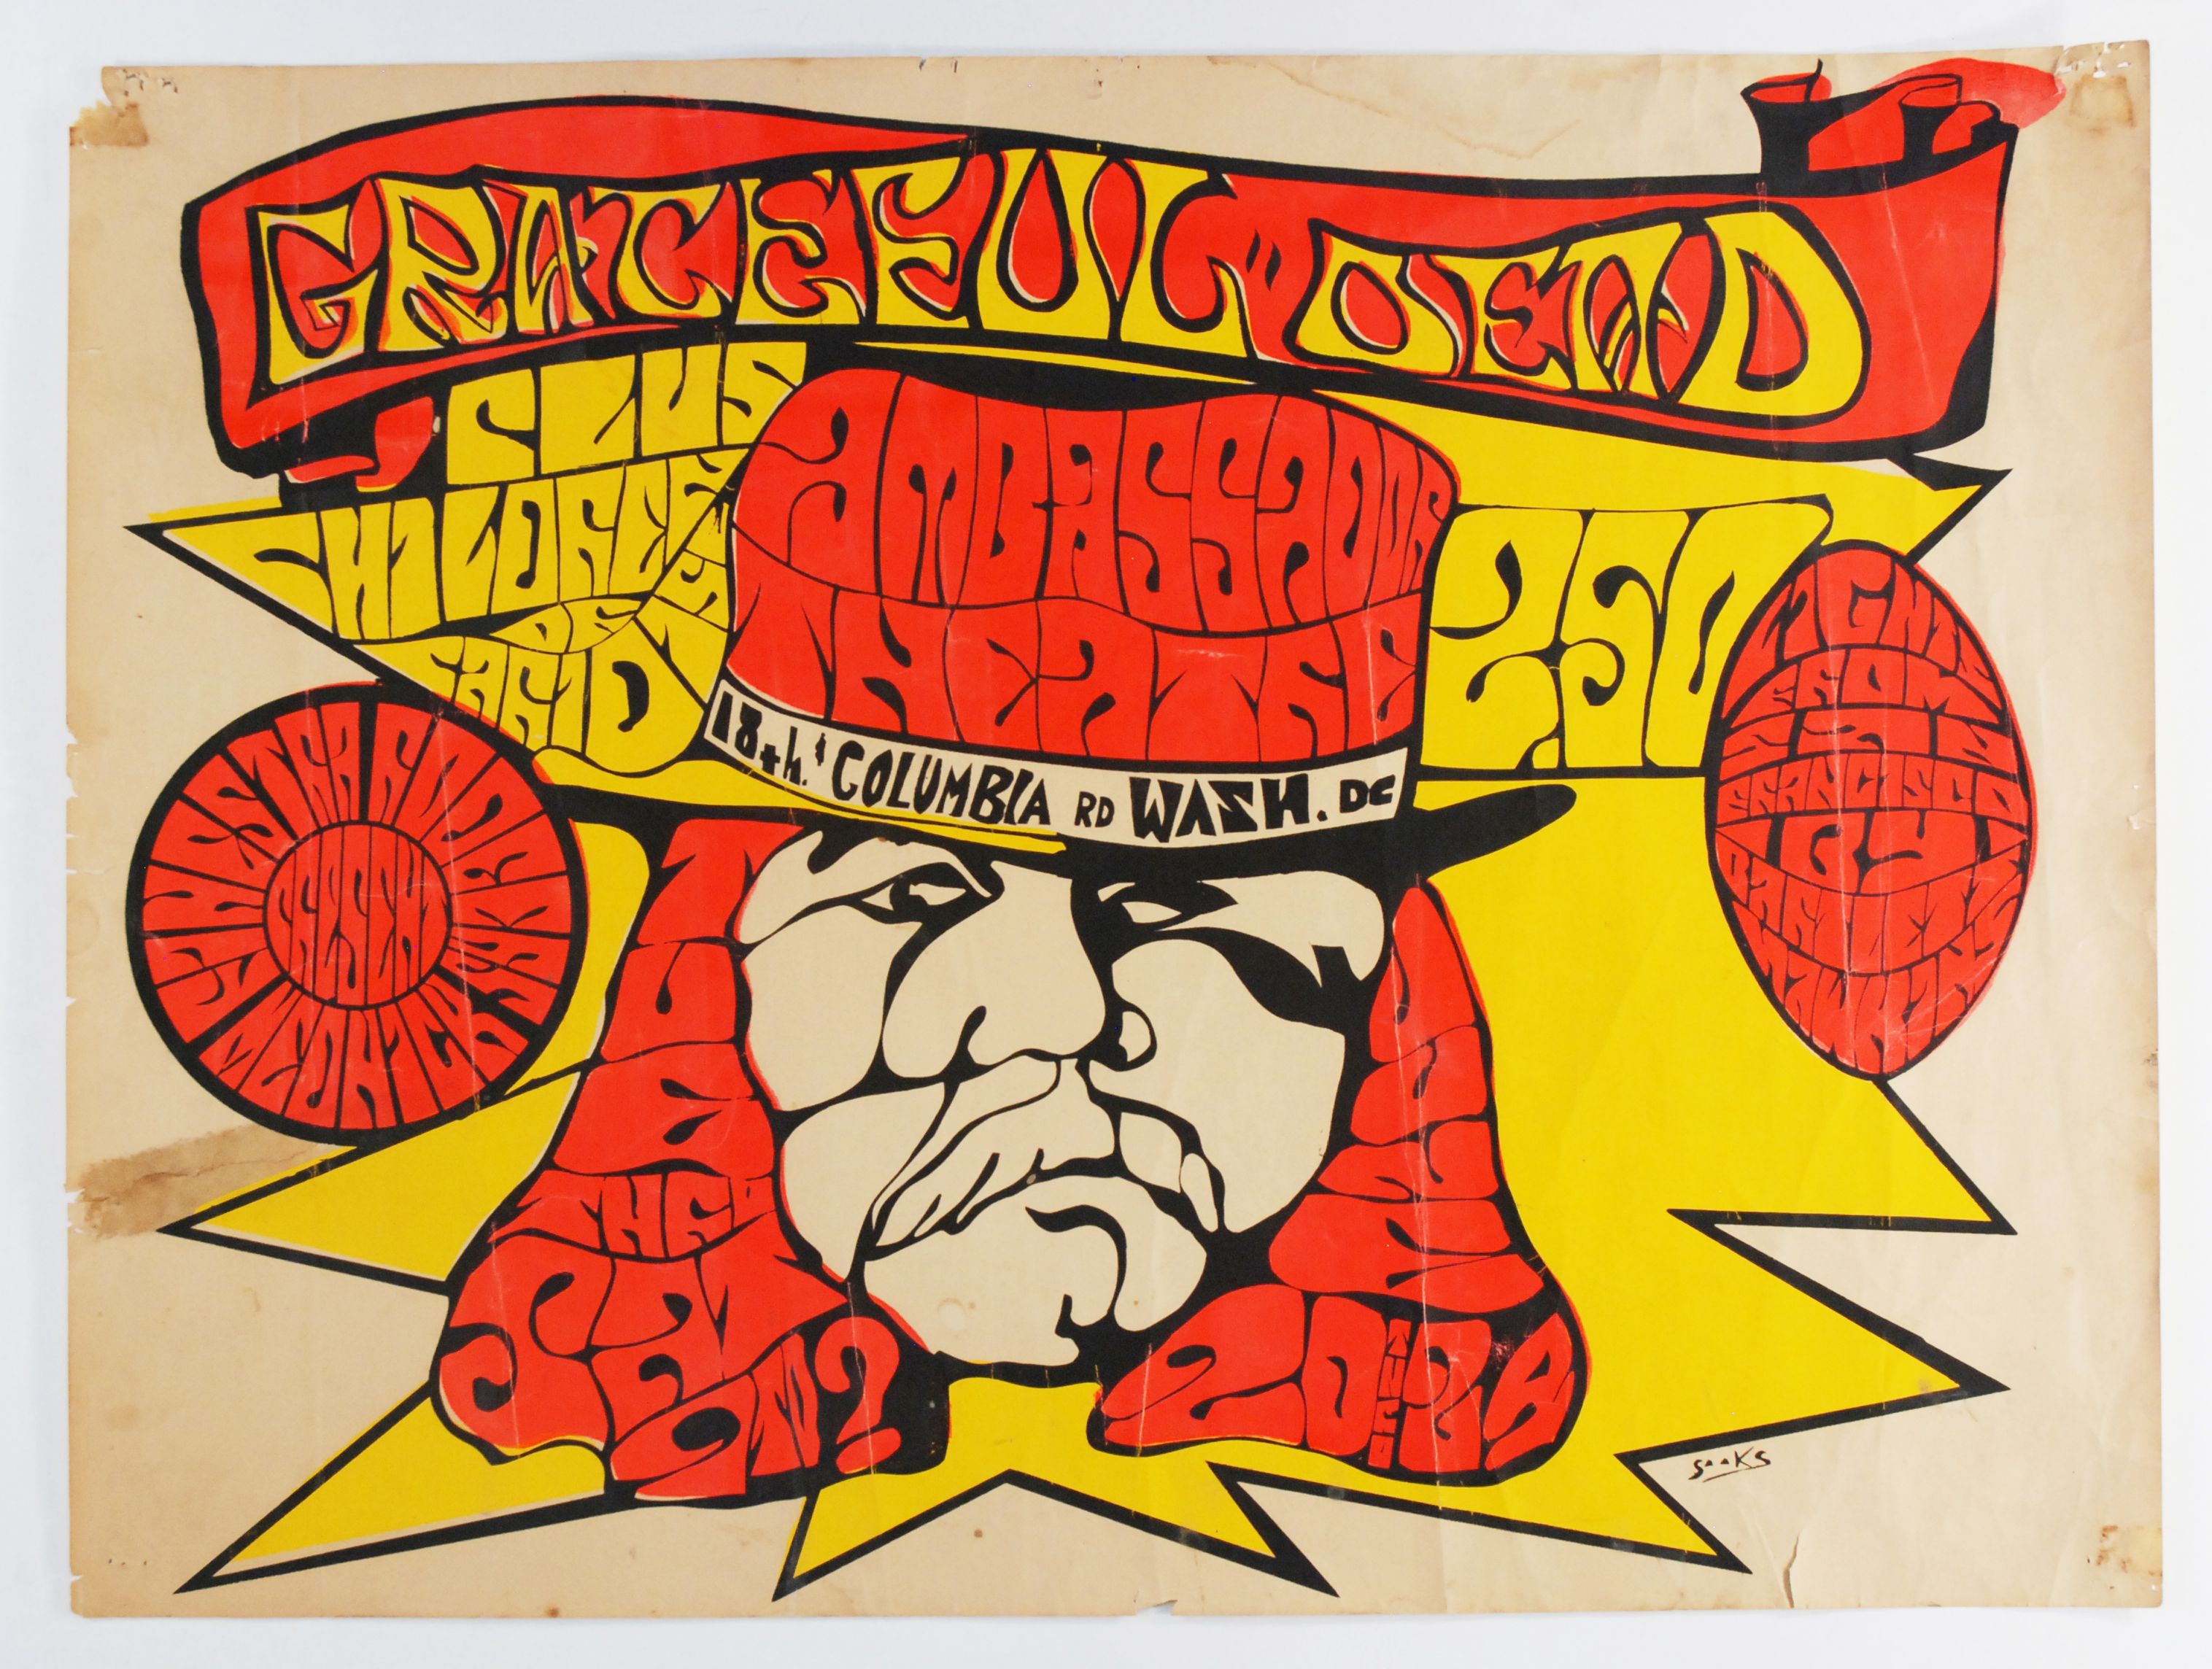 Grateful Dead Ambassador Theatre 1967 Concert Poster